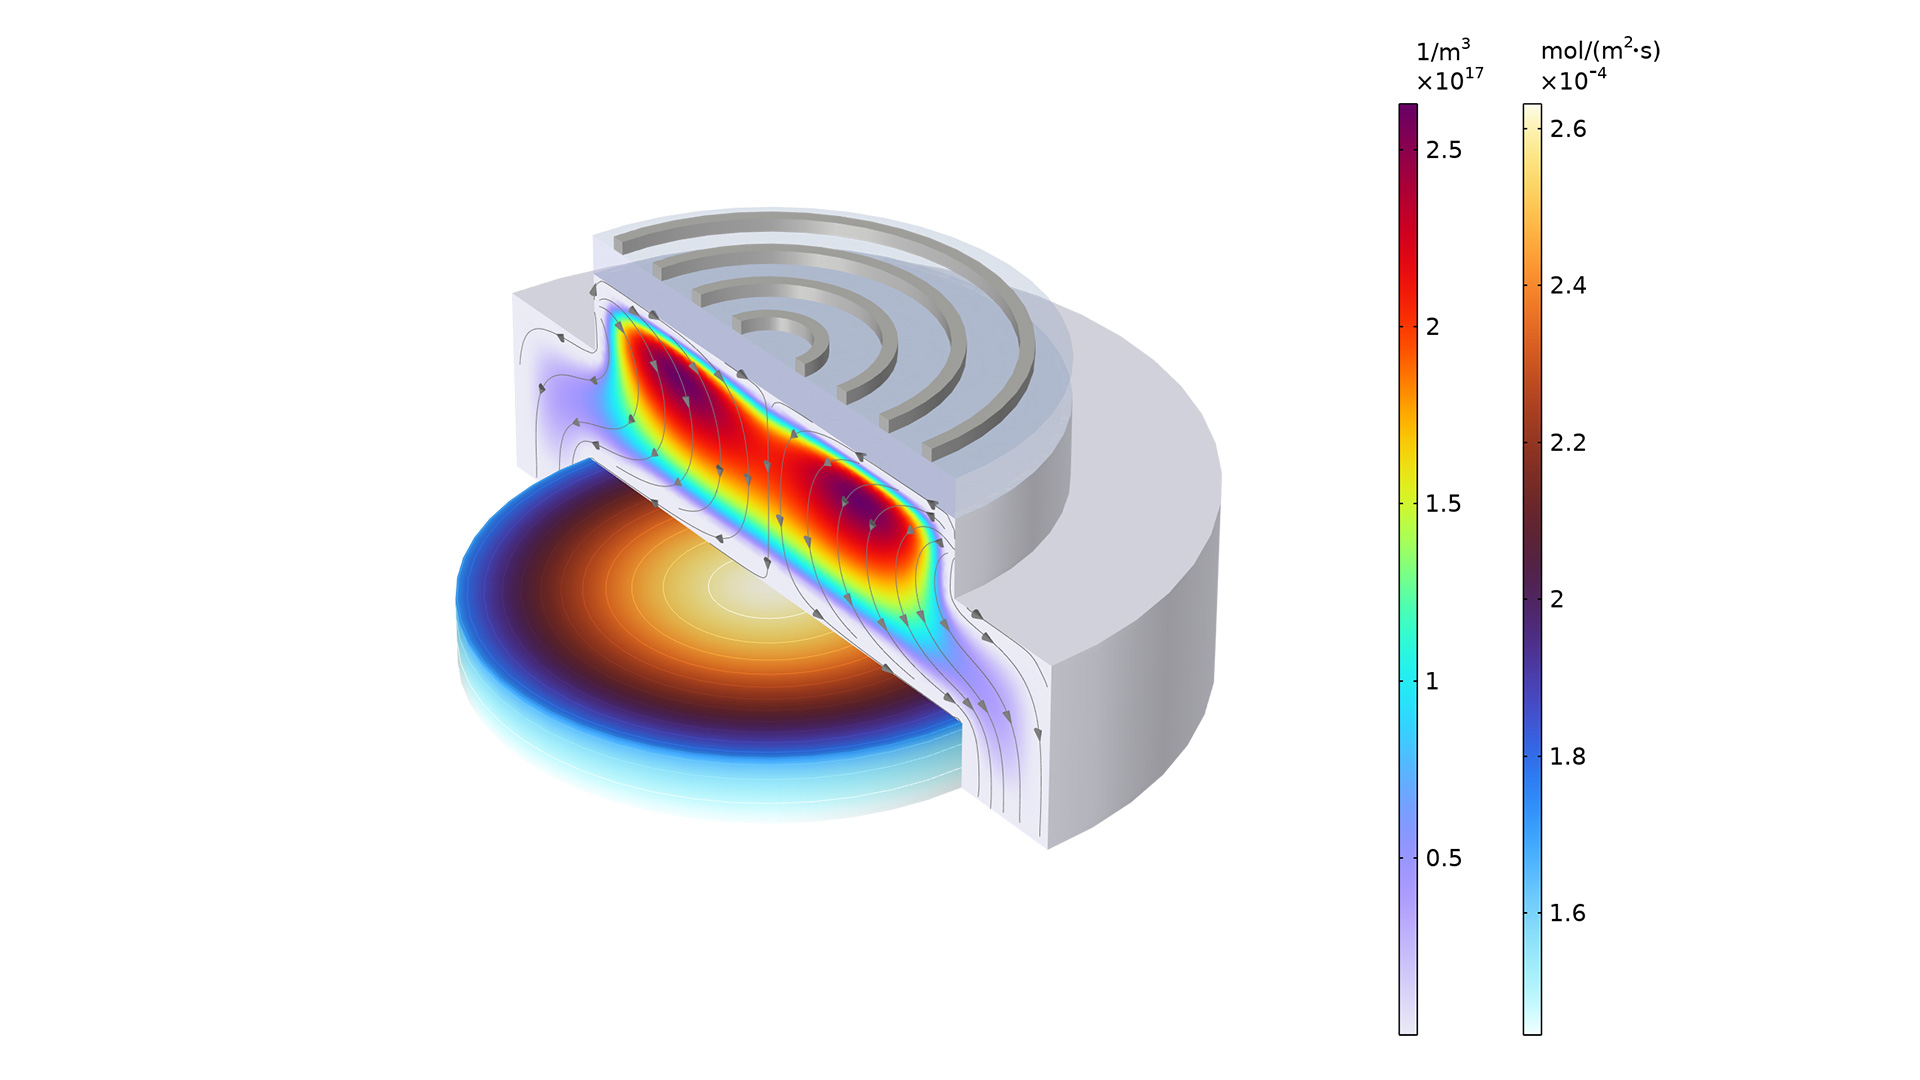 以 Thermal Wave 和 Prism 颜色表显示的反应器模型，图中带有箭头。